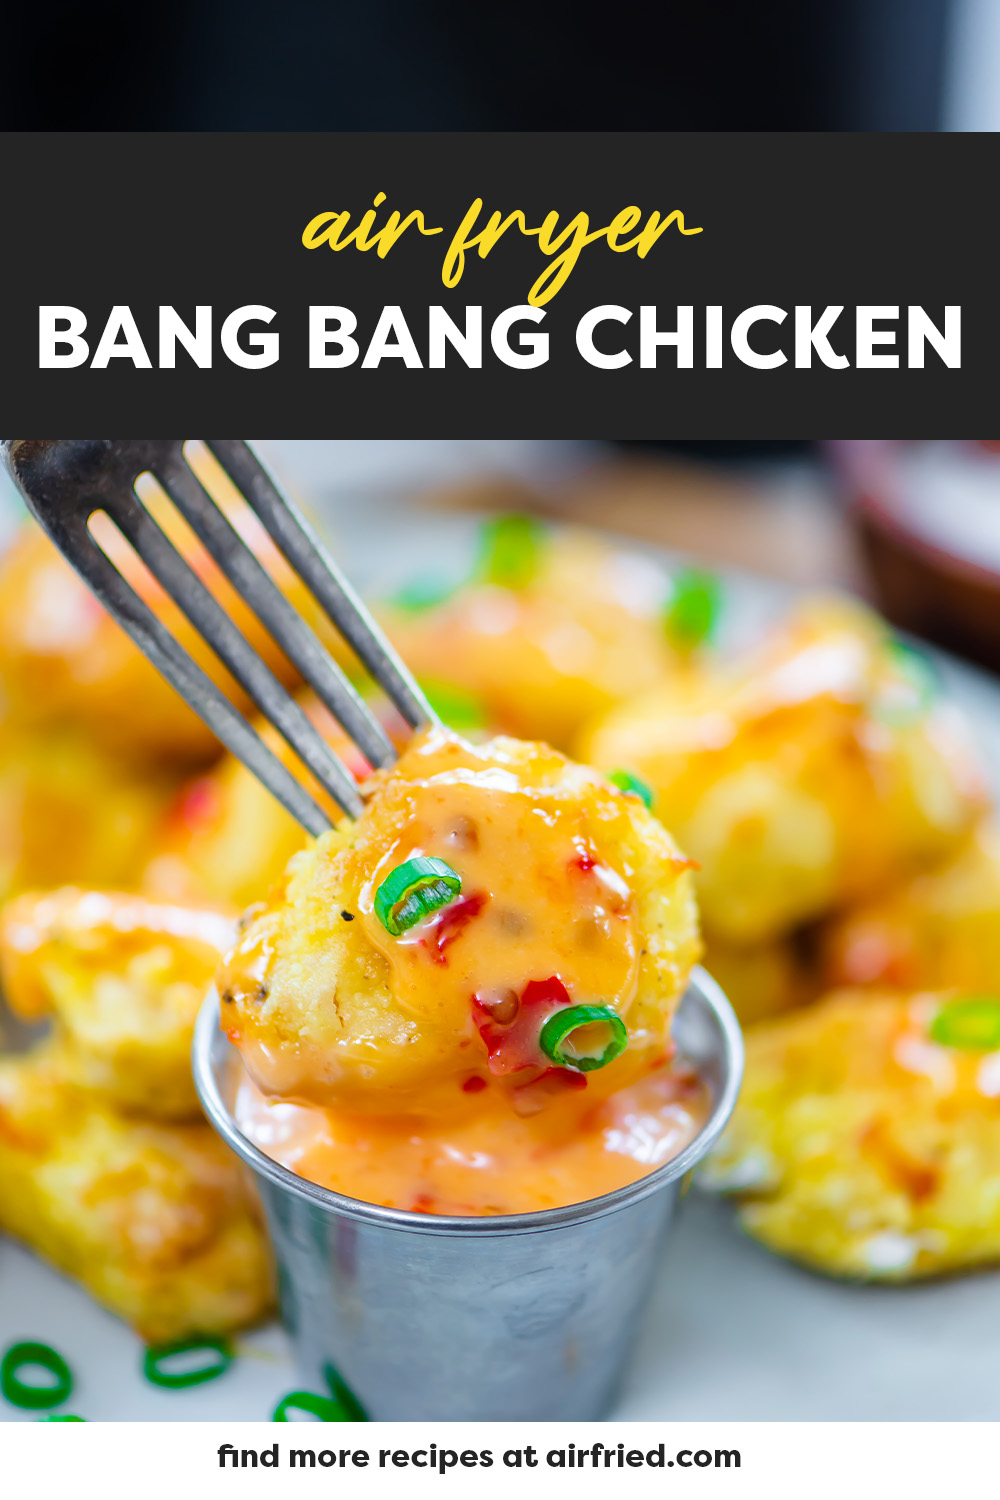 Bang bang chicken getting dipped.